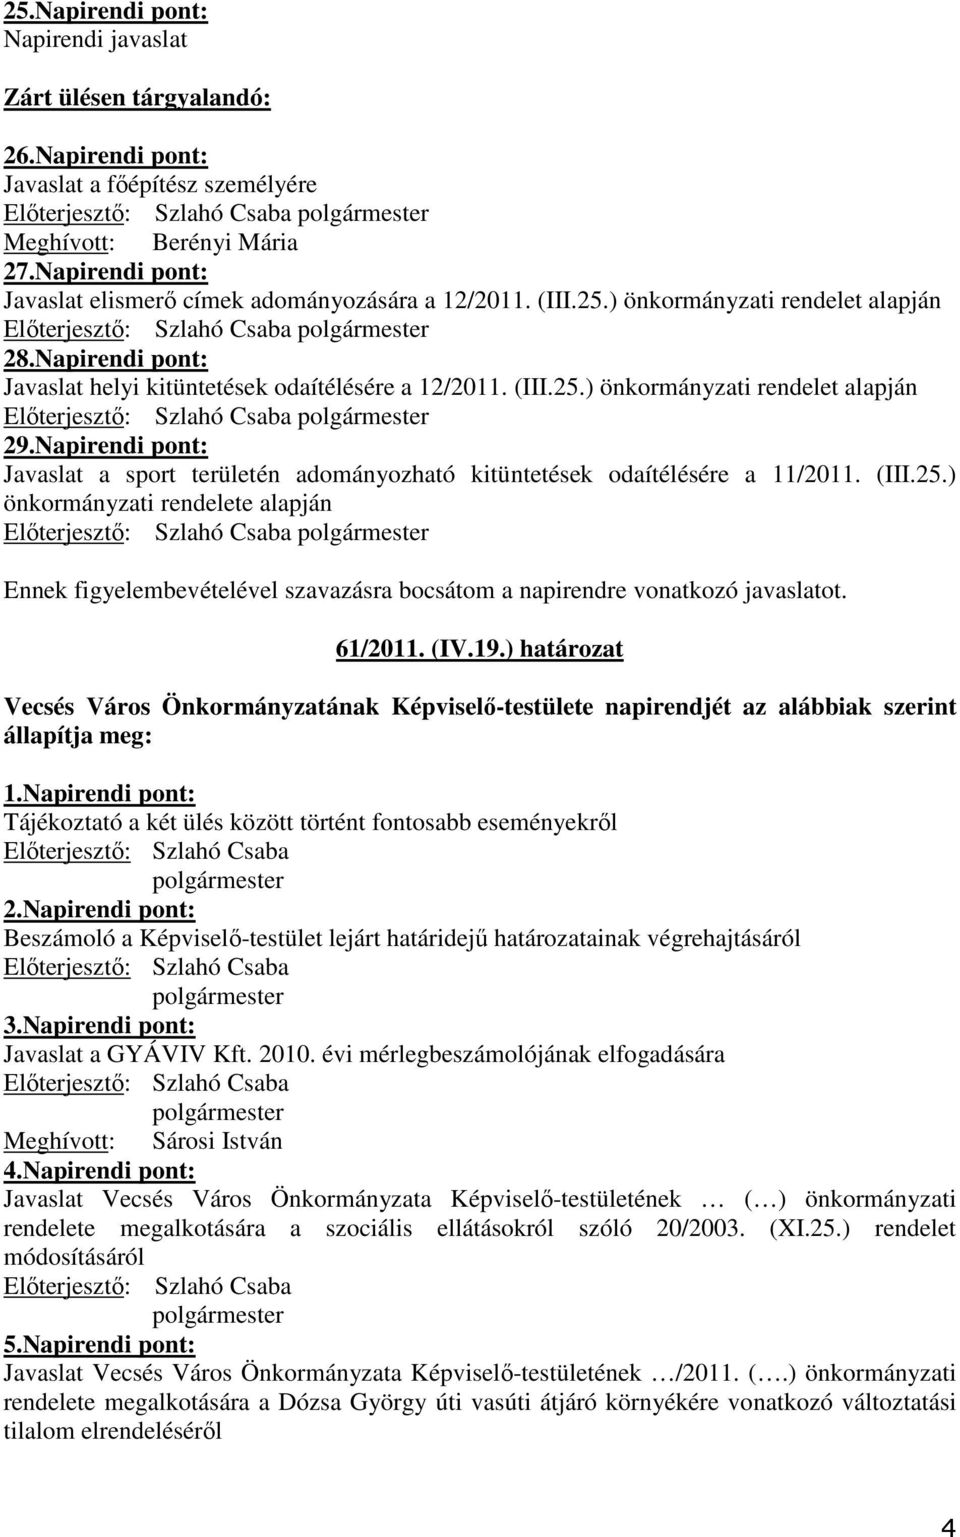 Napirendi pont: Javaslat helyi kitüntetések odaítélésére a 12/2011. (III.25.) önkormányzati rendelet alapján Elıterjesztı: Szlahó Csaba 29.